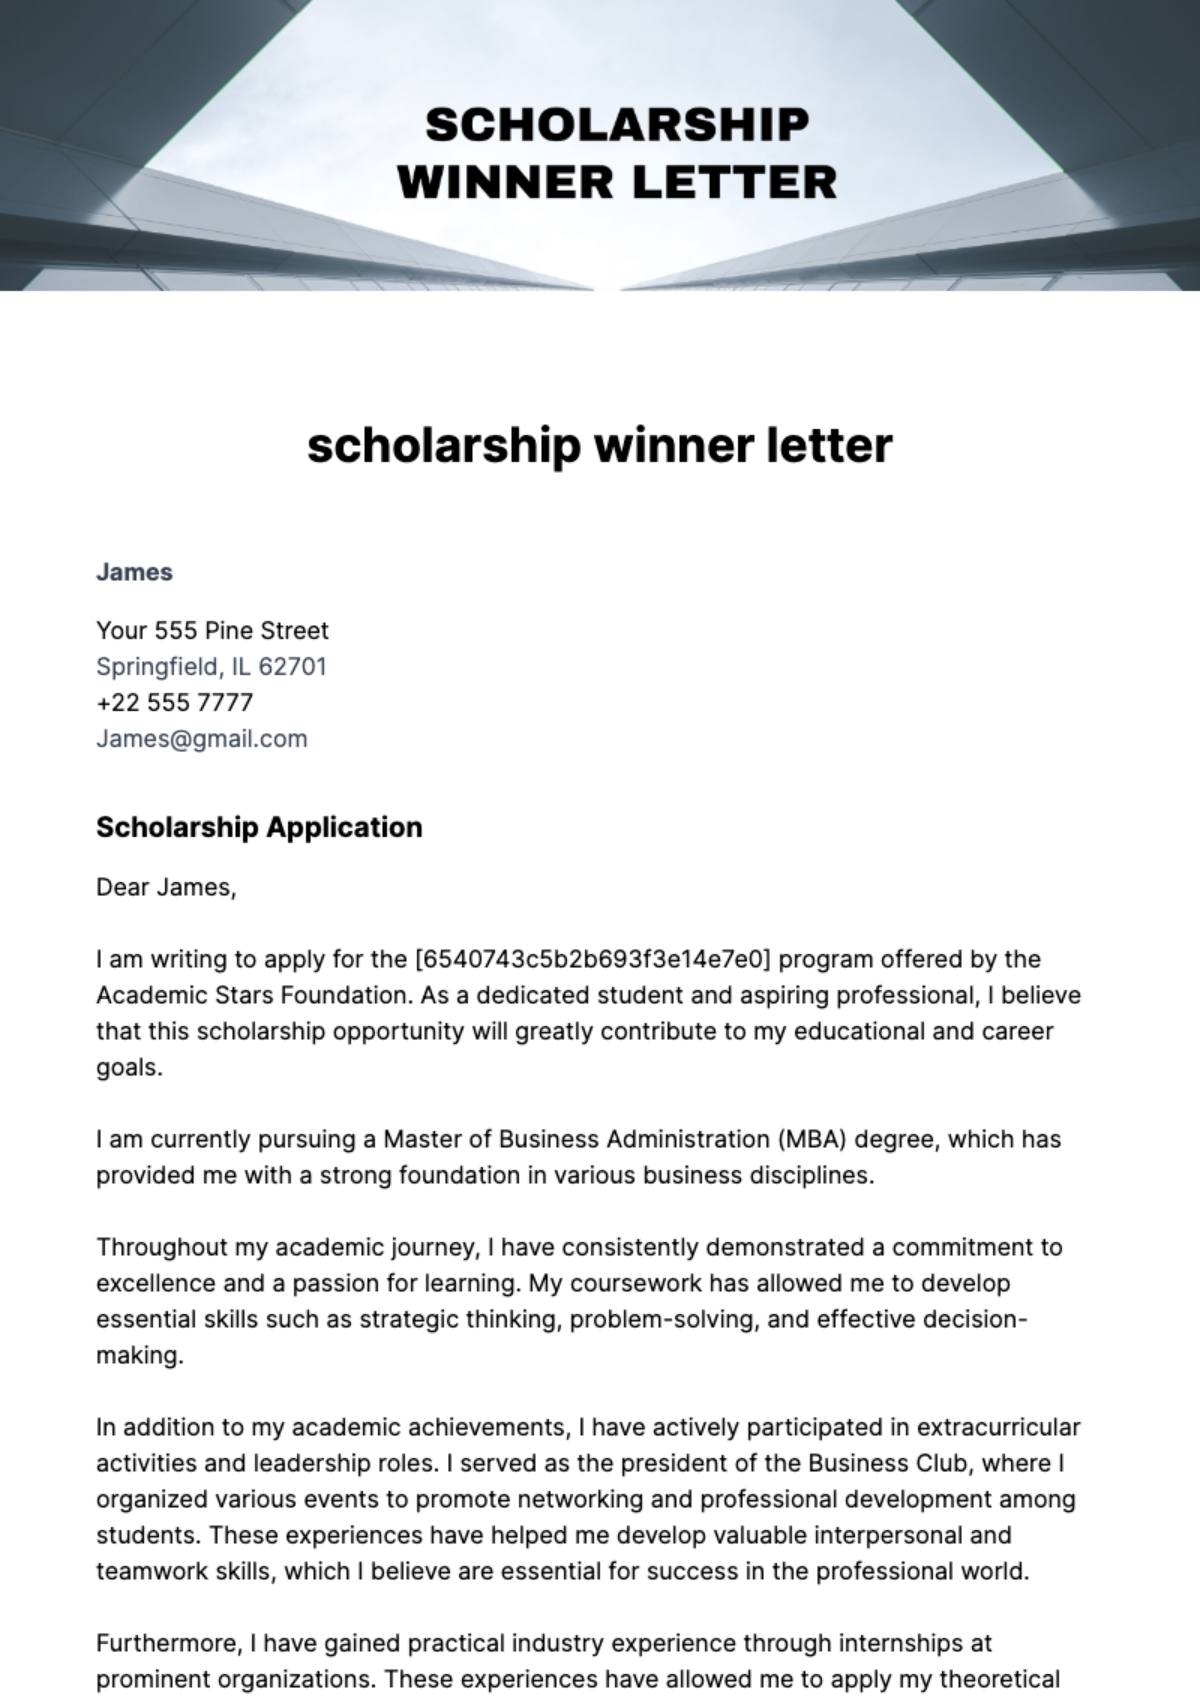 Free scholarship winner letter Template